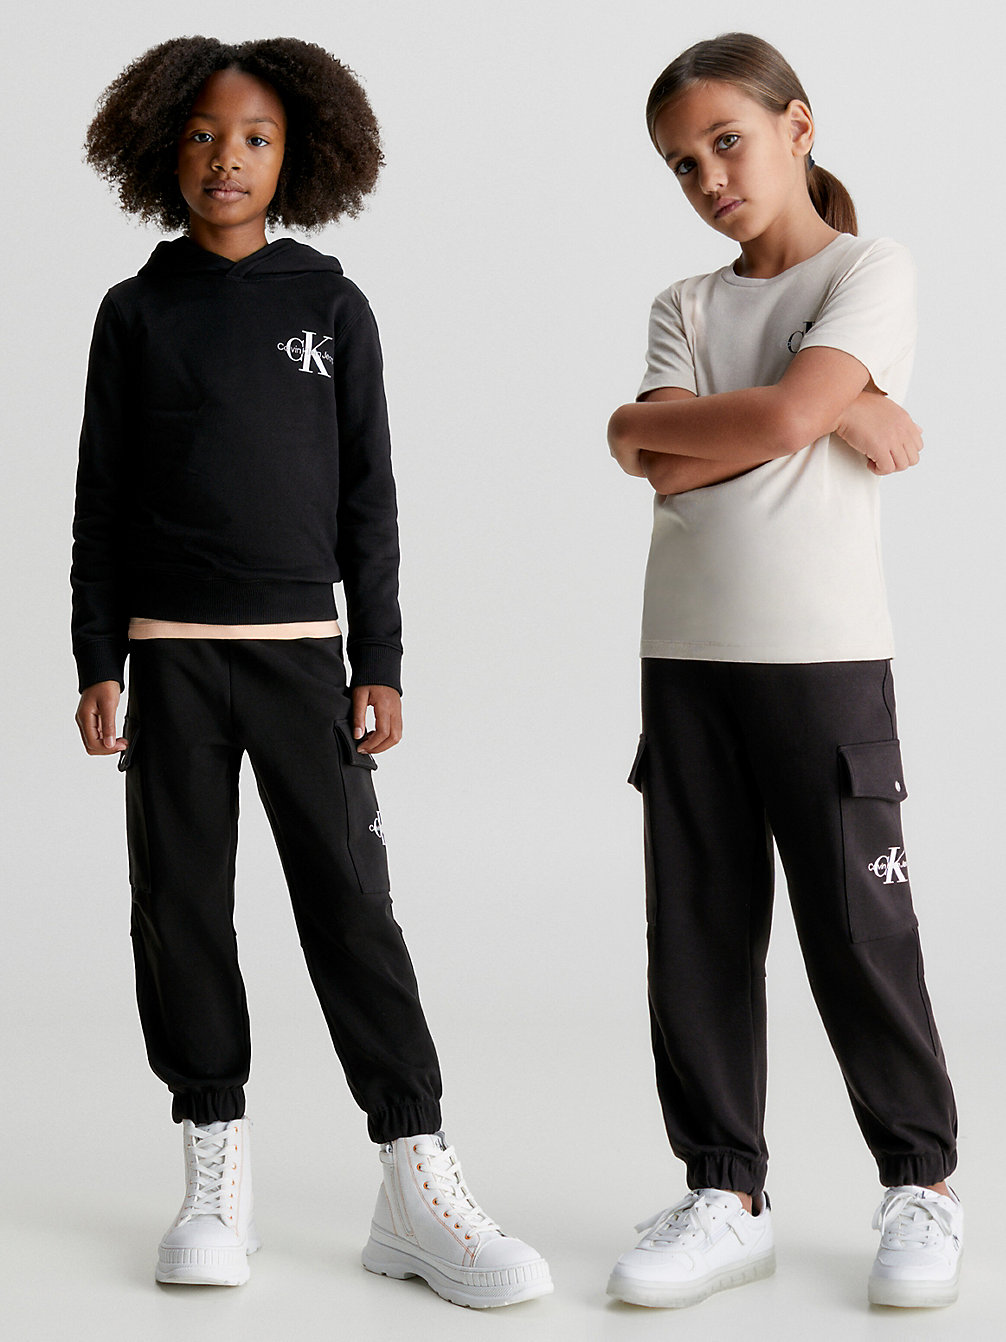 CK BLACK Kids Cargo Pants undefined kids unisex Calvin Klein